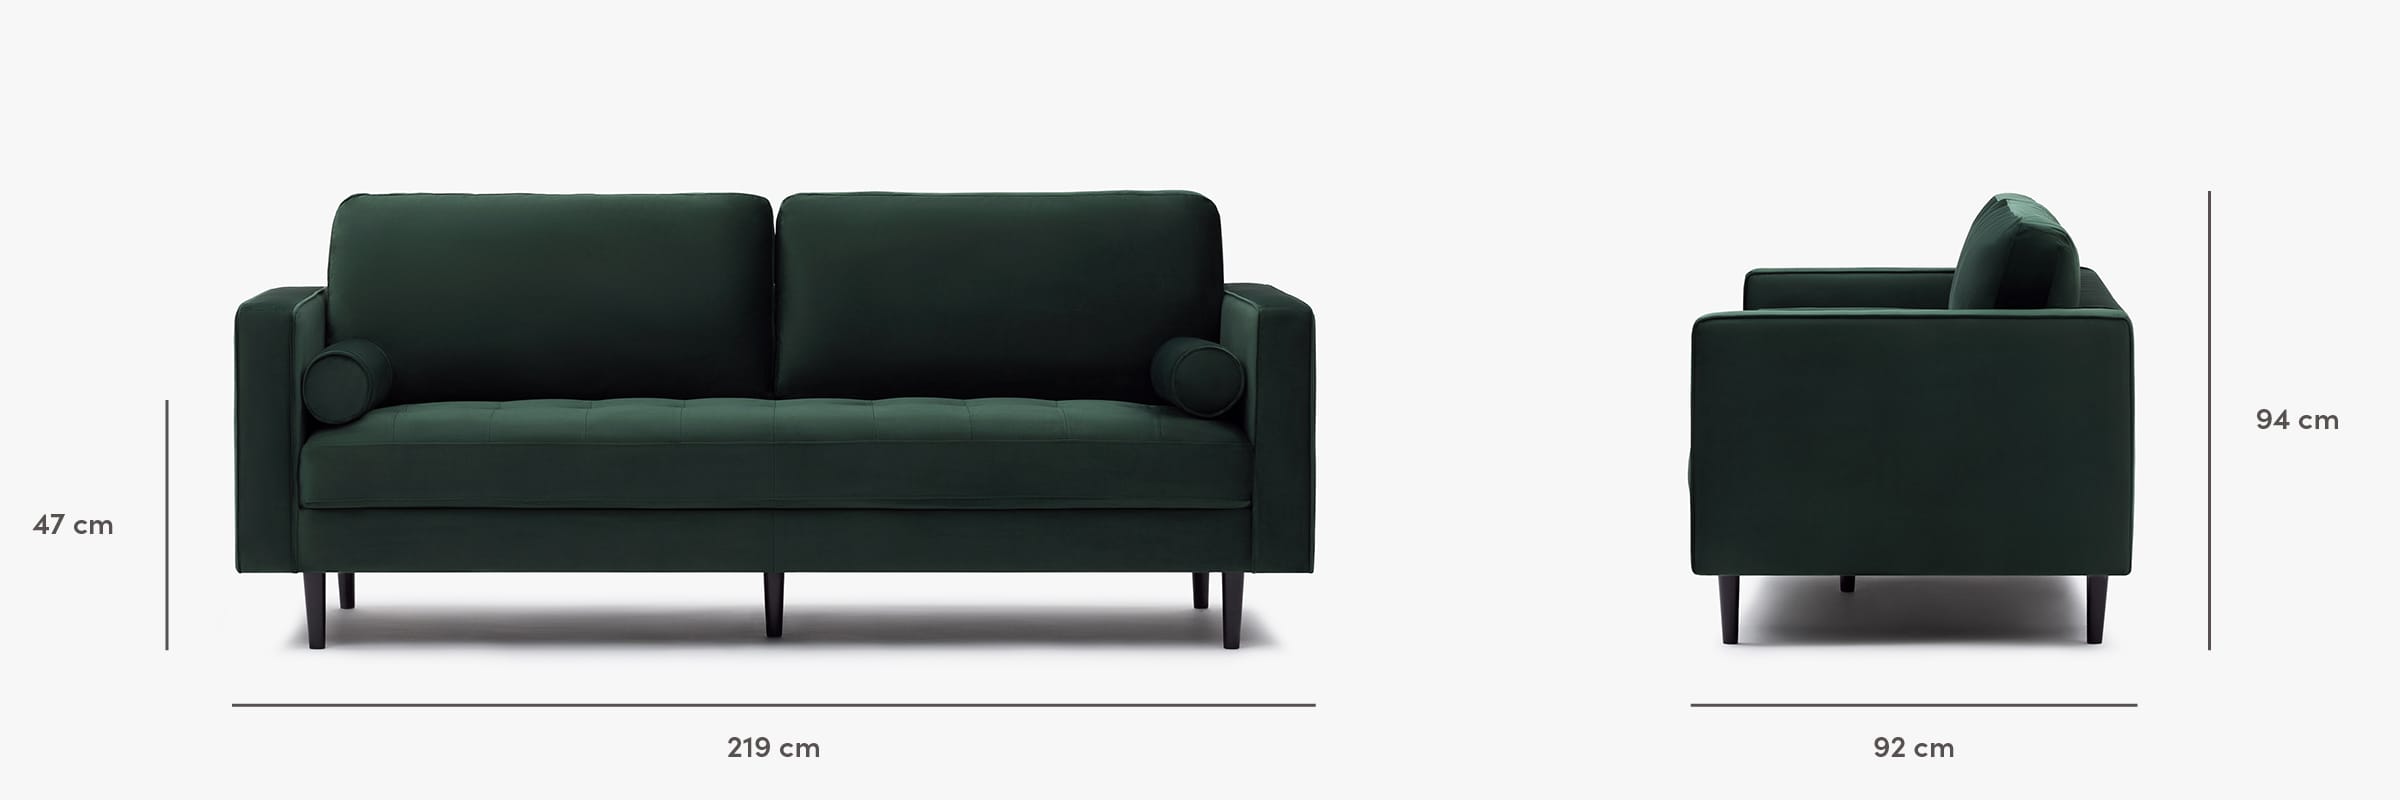 Soho velvet sofa dimensions